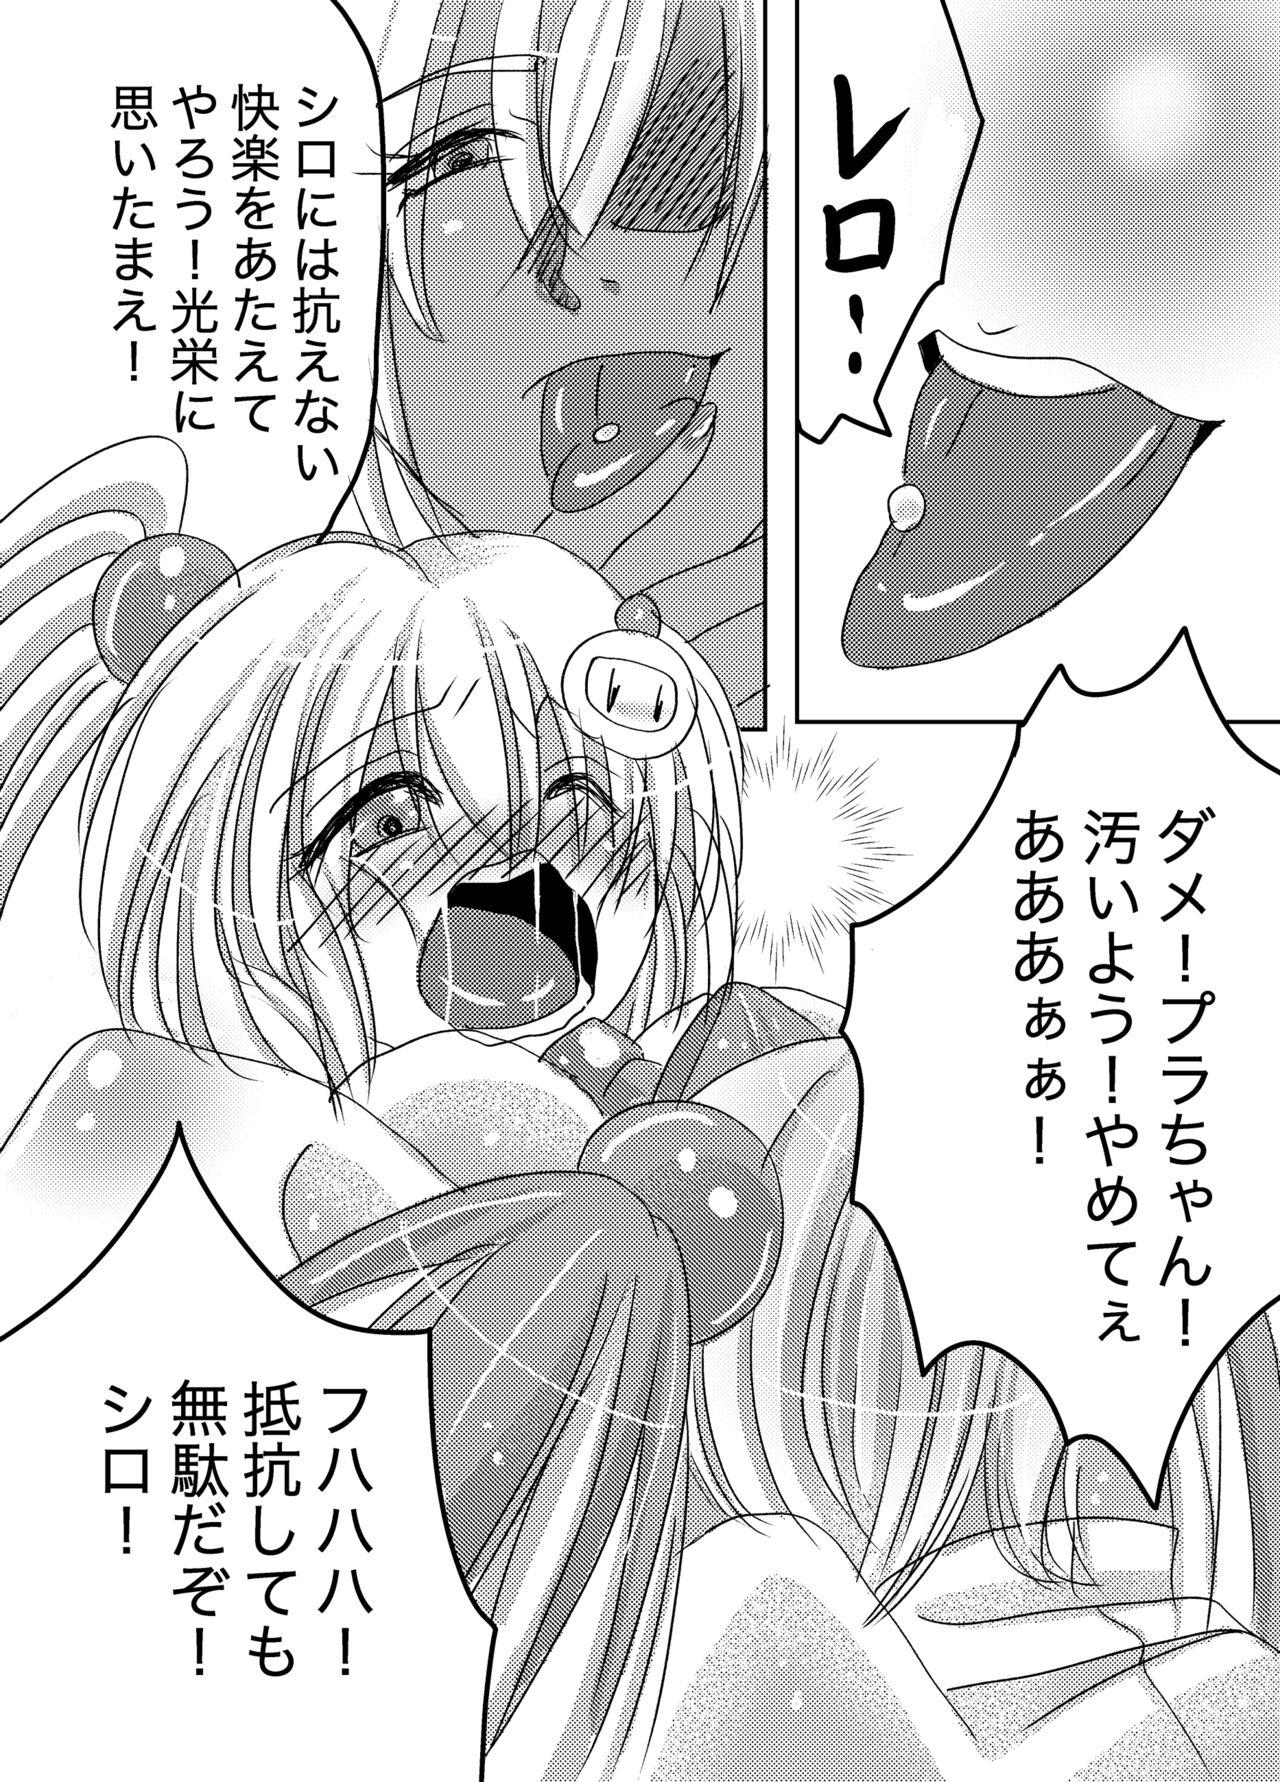 Hole Galtinum ni Omanko Peropero Sarechau Shiro-chan no Manga - Bomber girl Putita - Page 4